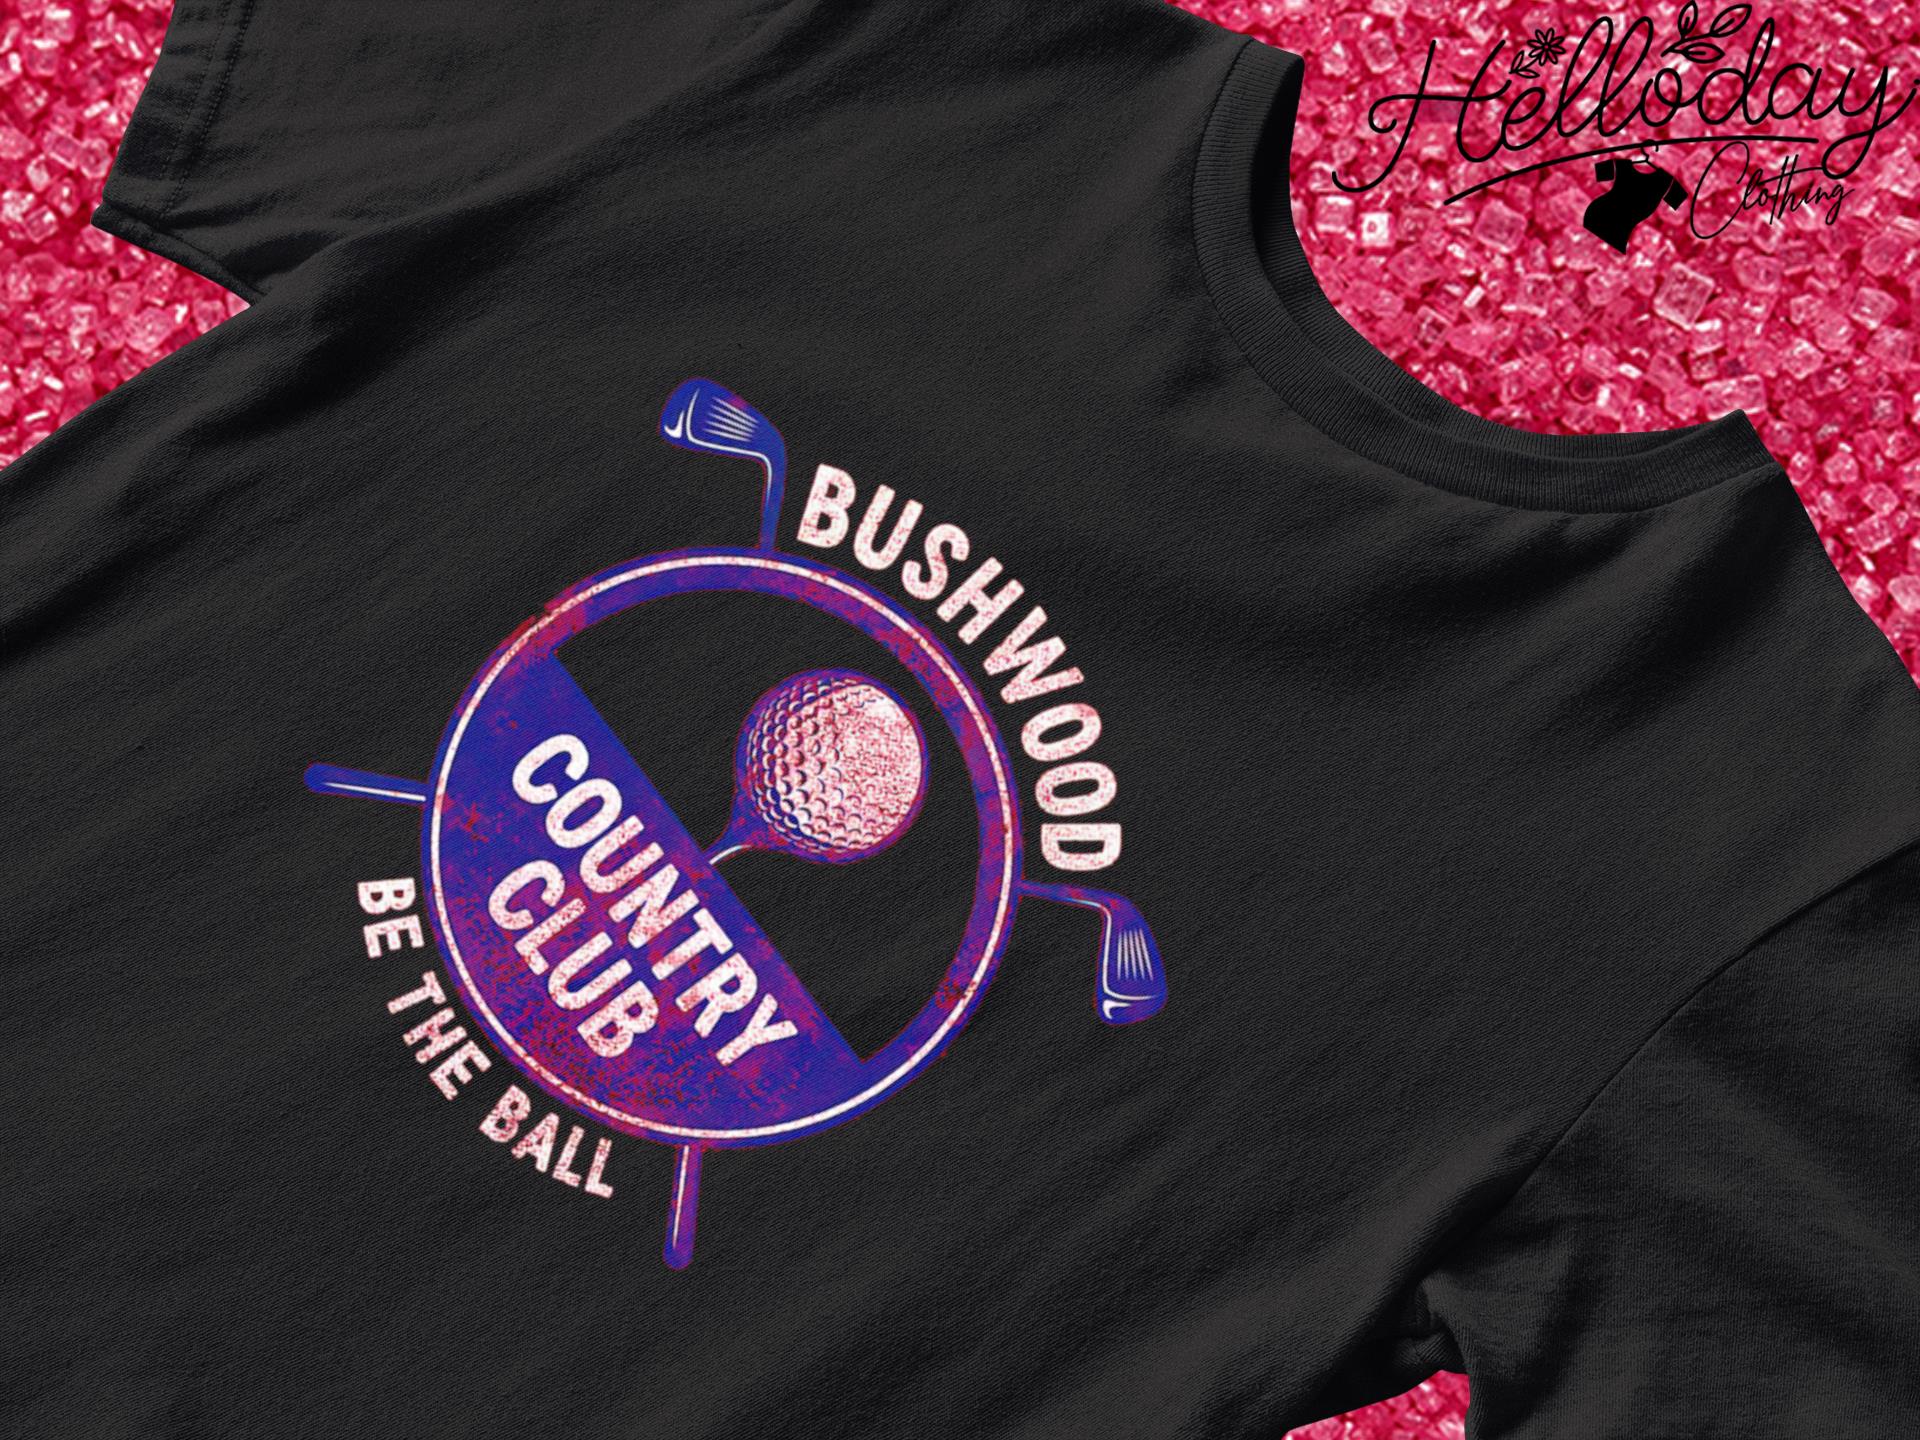 Bushwood Country Club be the ball shirt